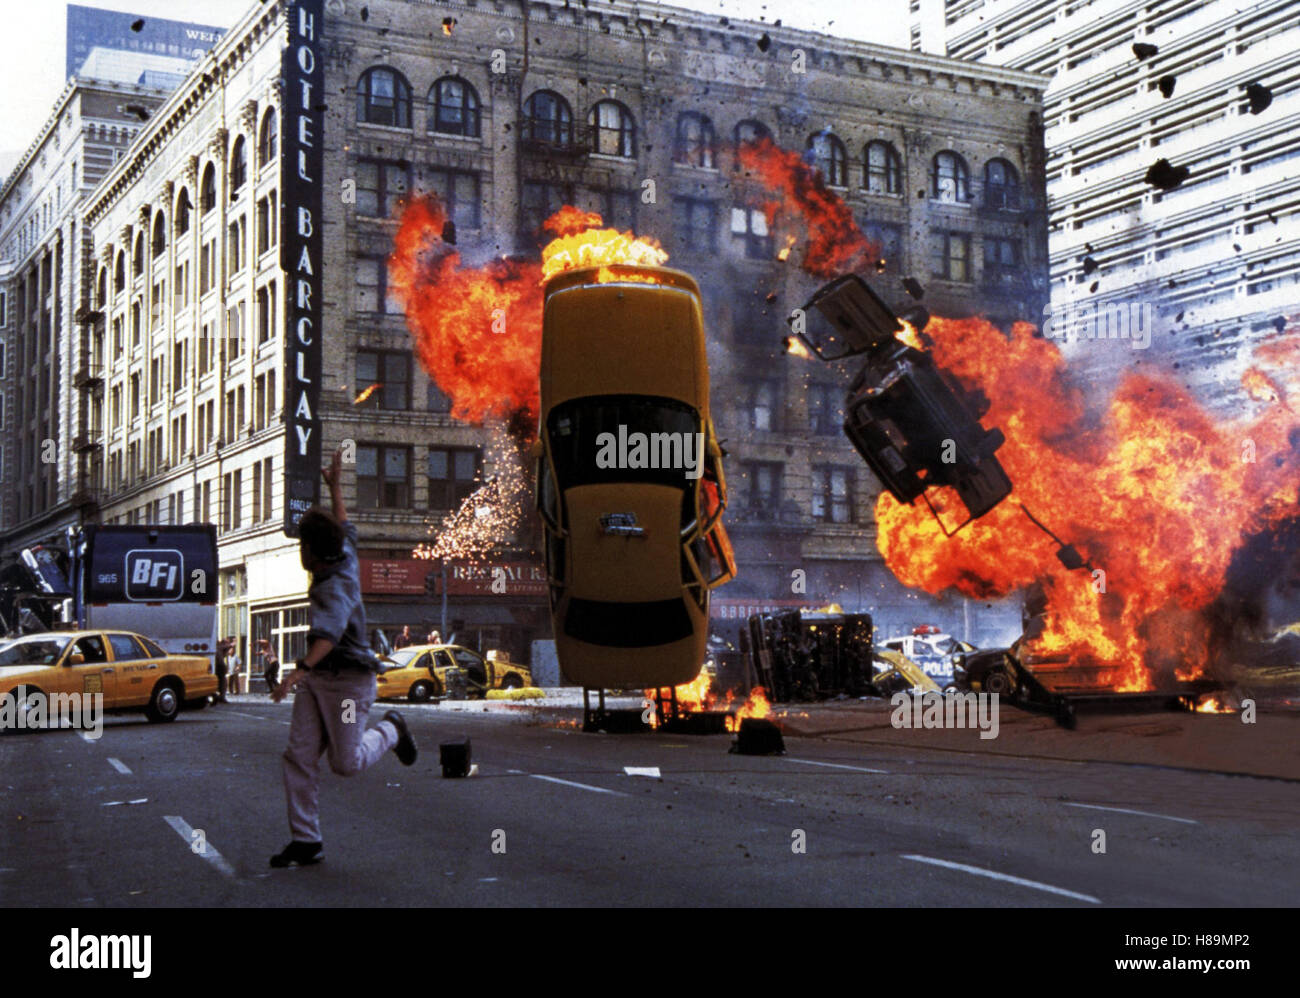 Armageddon - Das jüngste Gericht (ARMAGEDDON) USA 1998, Regie: Michael Bay, Szene Stichwort: explosión, Feuer, Brennende Autos Foto de stock